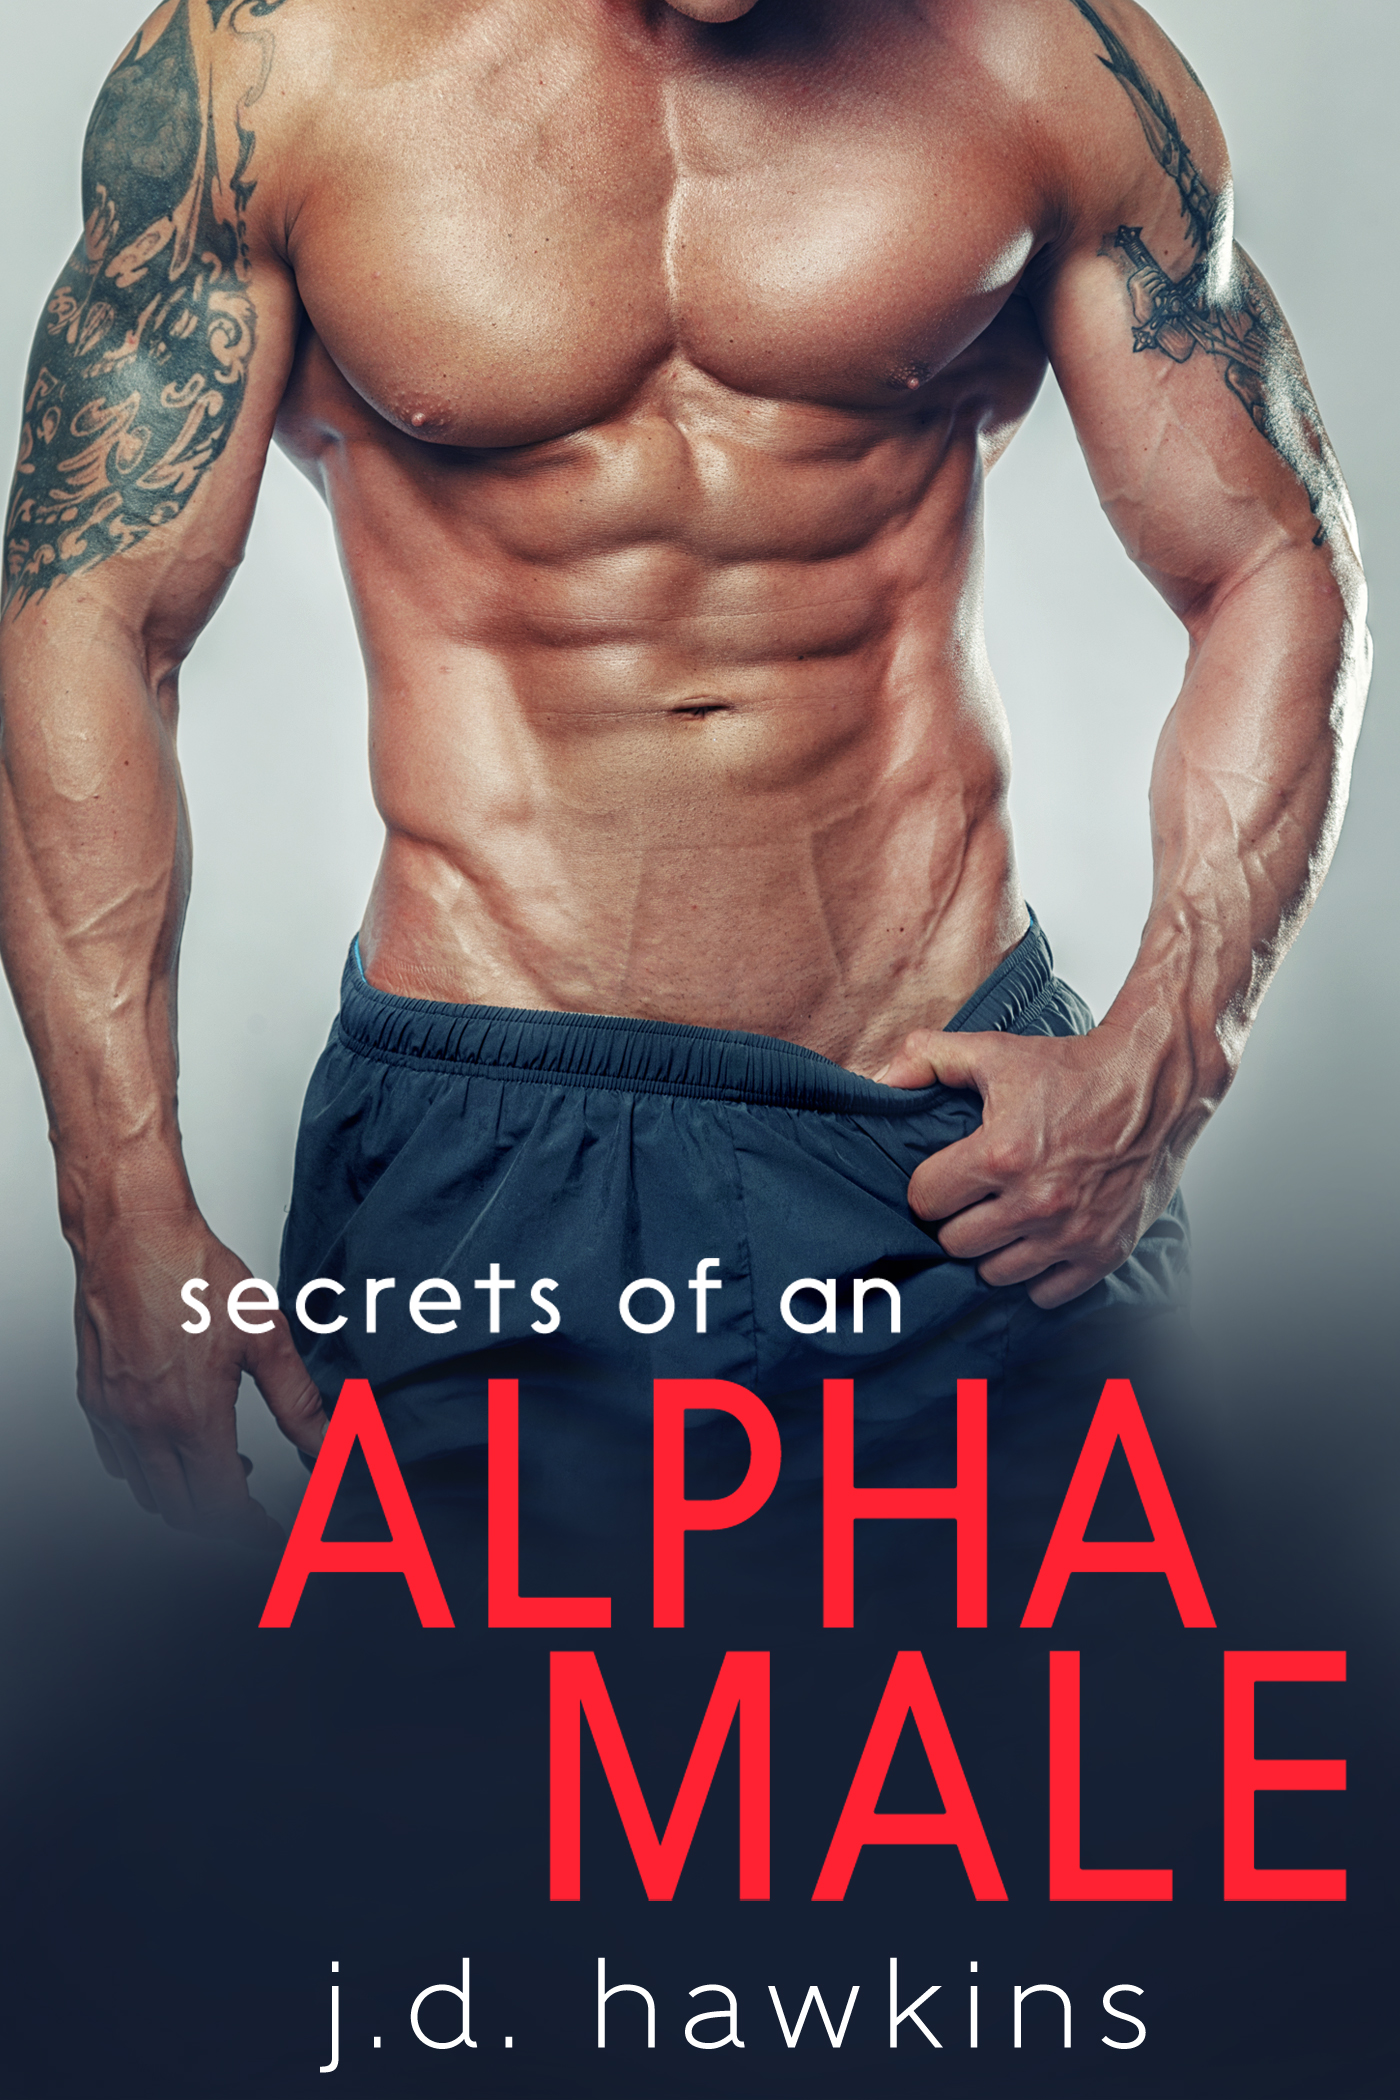 secrets-of-an-alpha-male-kindle-1. 